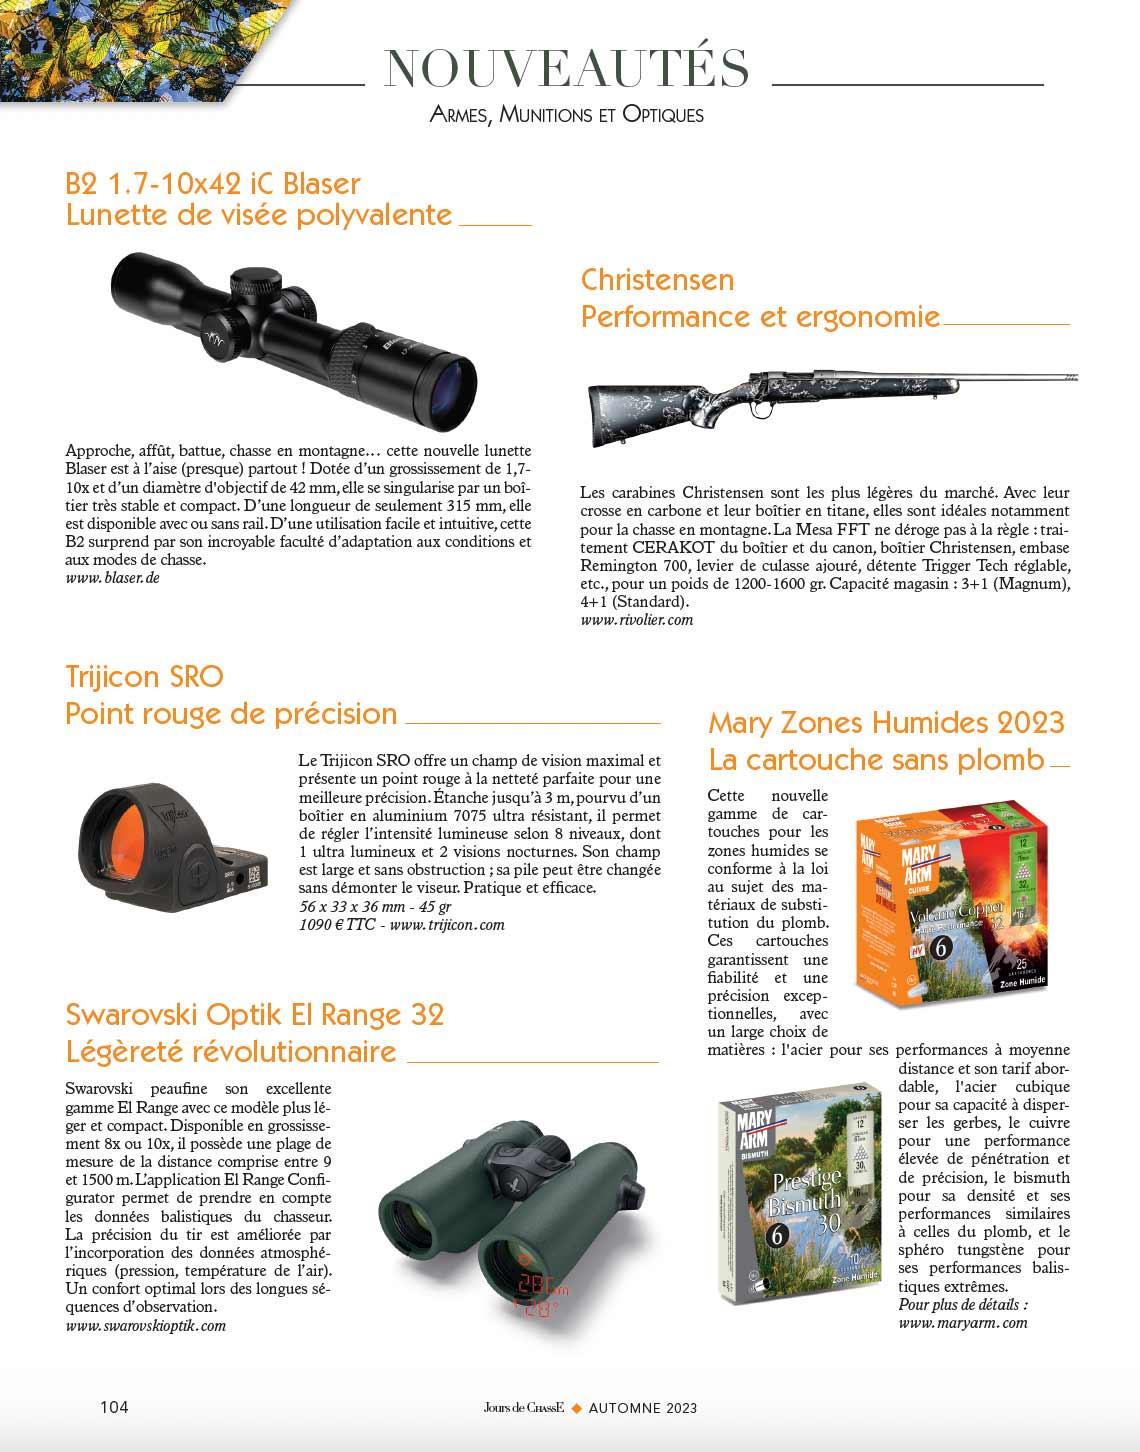 Nouveautés : Armes, munitions et optiques